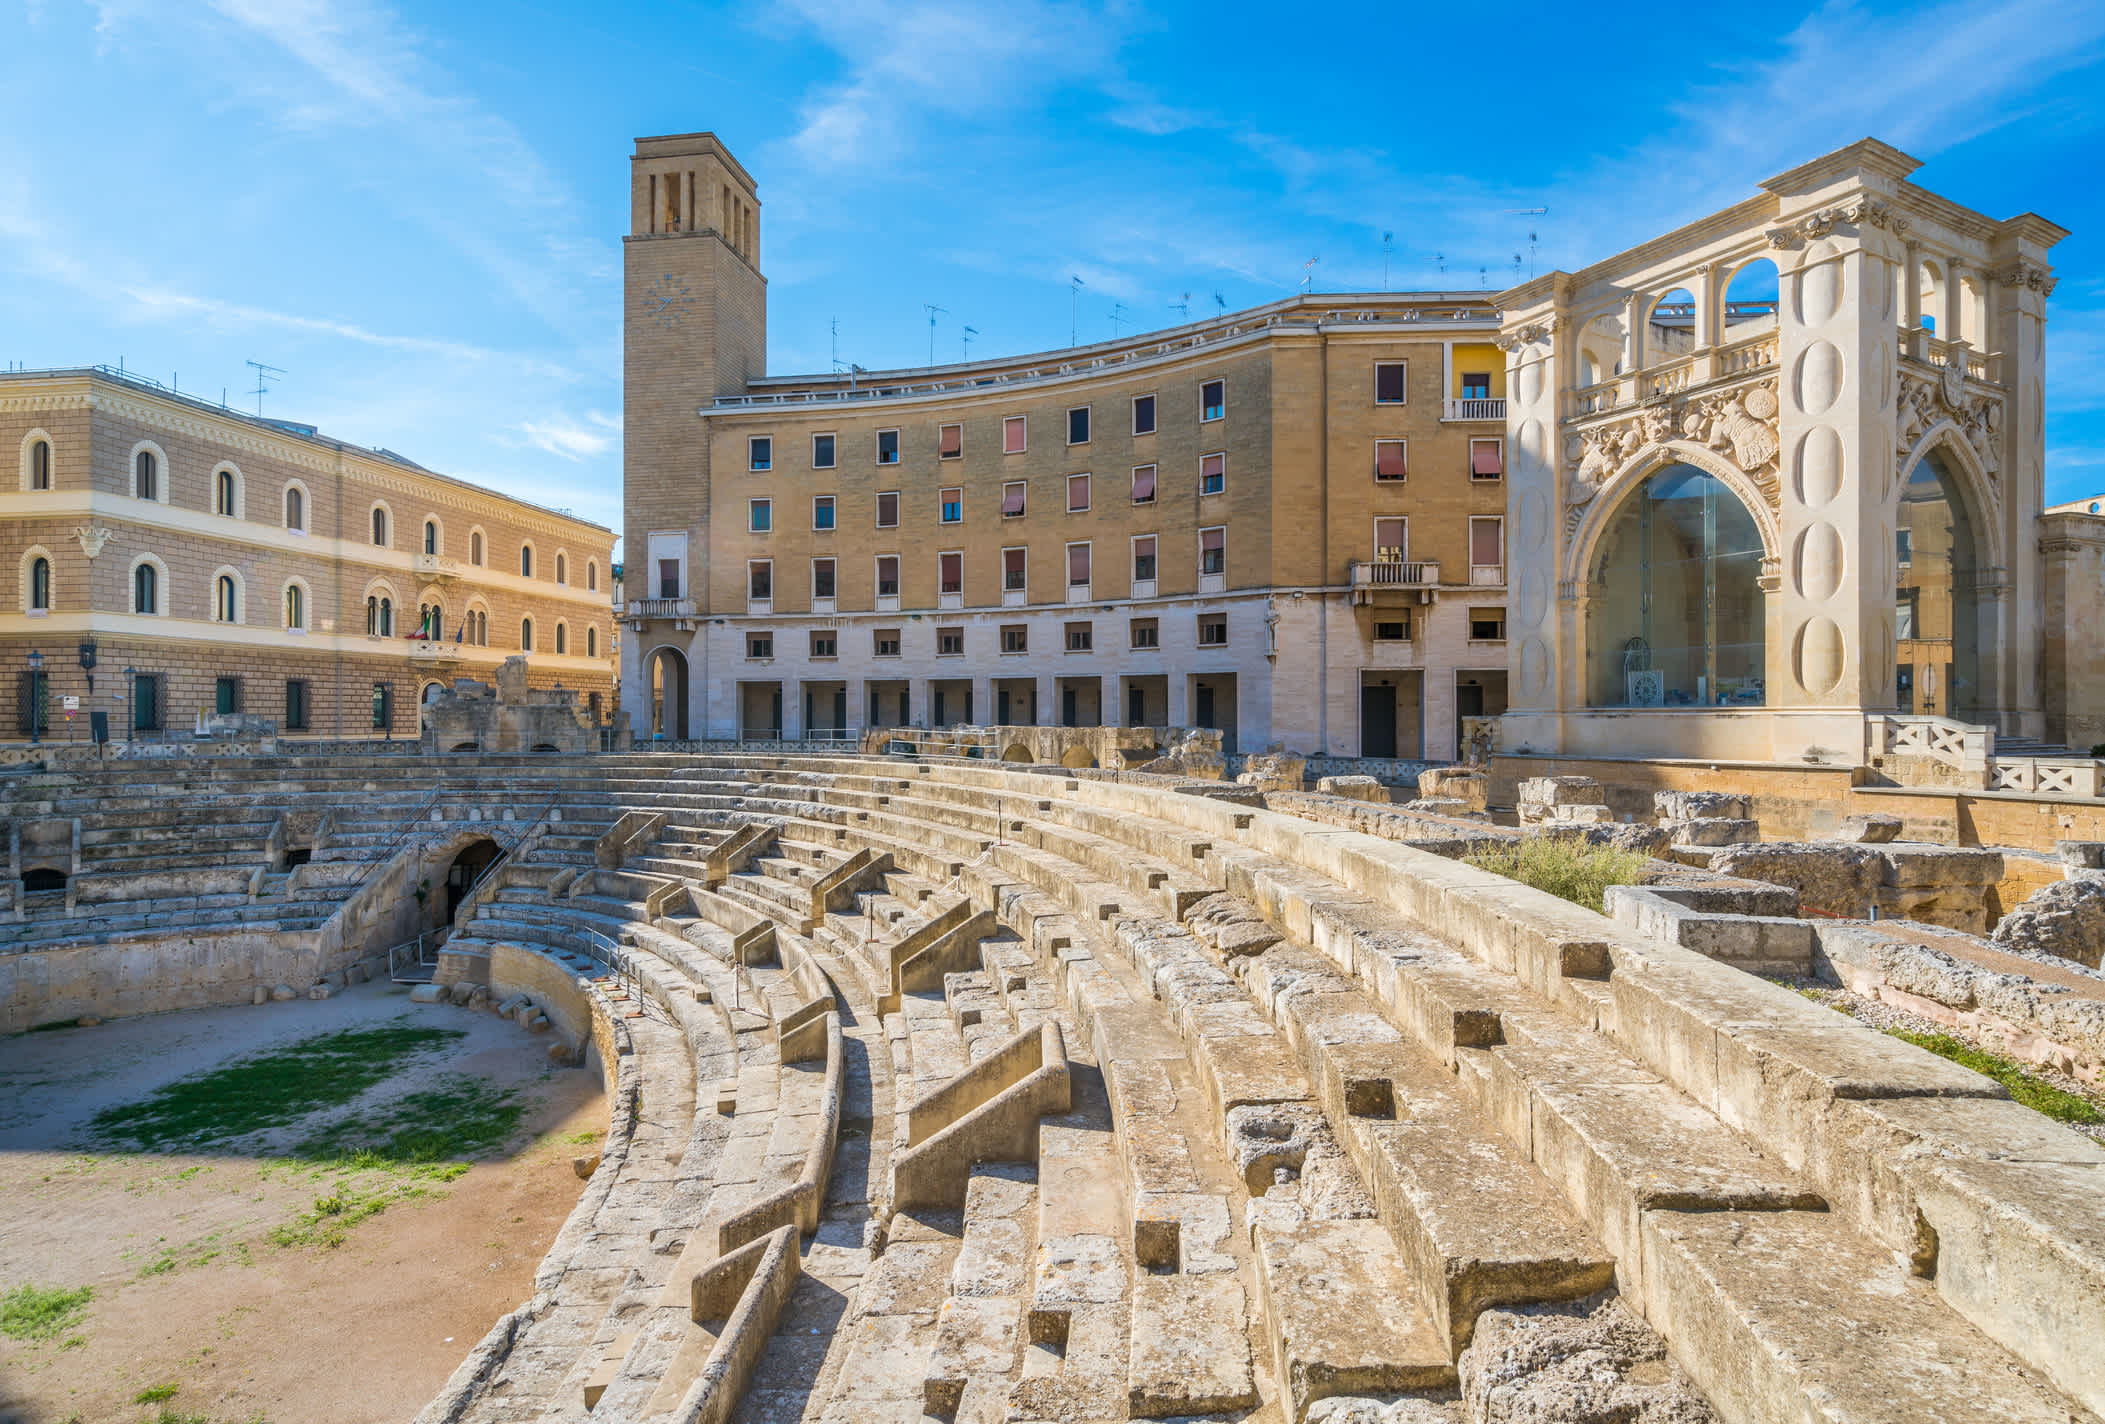 Ontdek de indrukwekkende Romeinse ruïnes tijdens uw verblijf in Lecce.